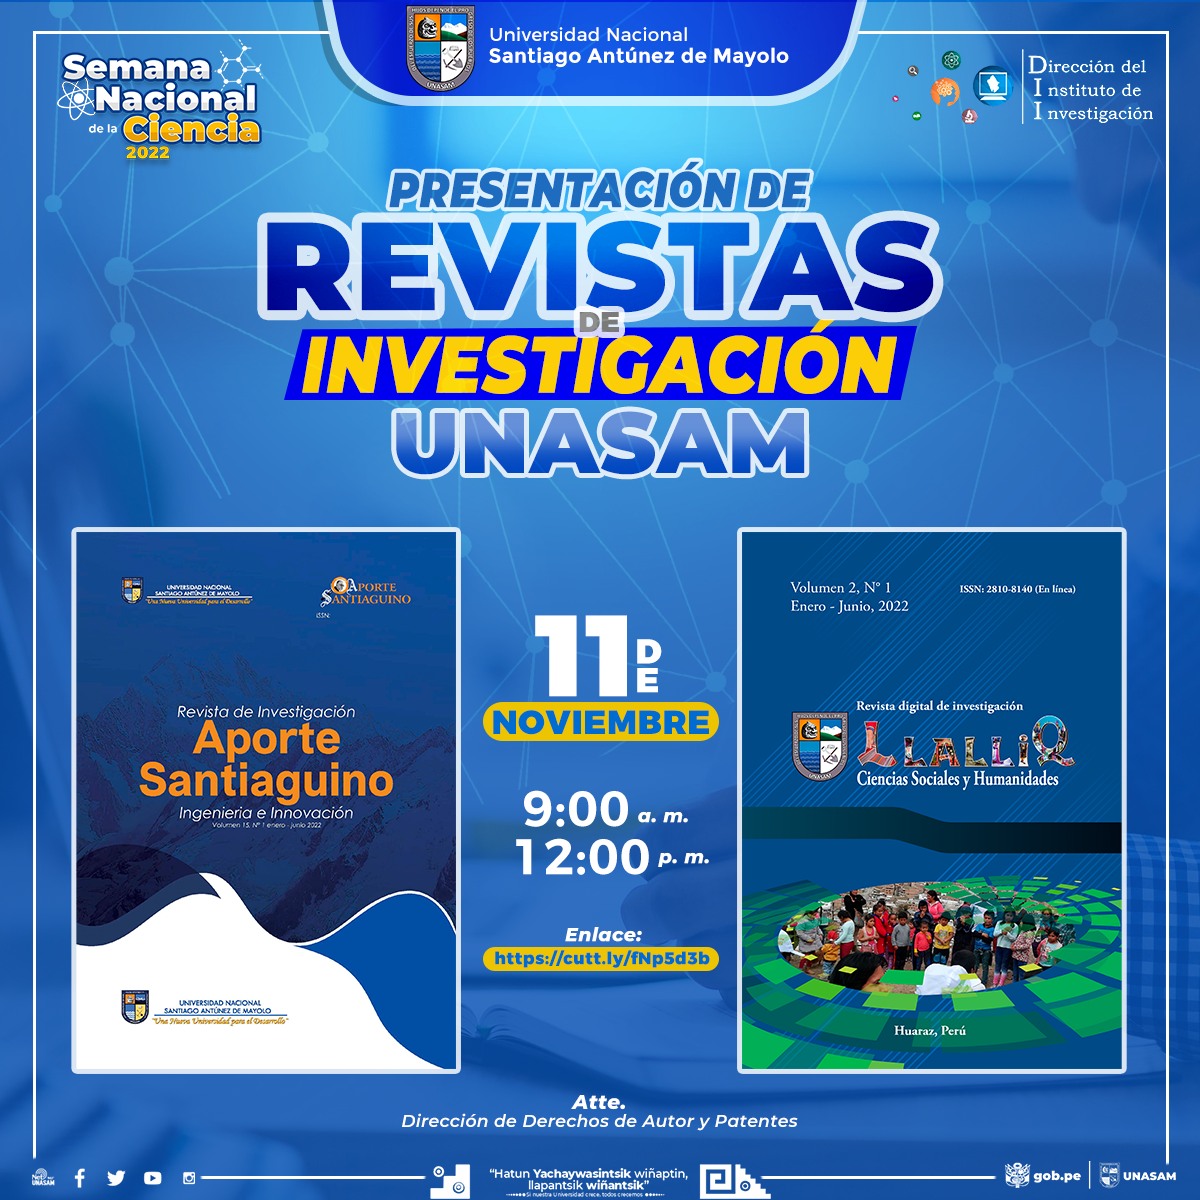  																Presentación de revistas Aporte Santiaguino y Llalliq
																